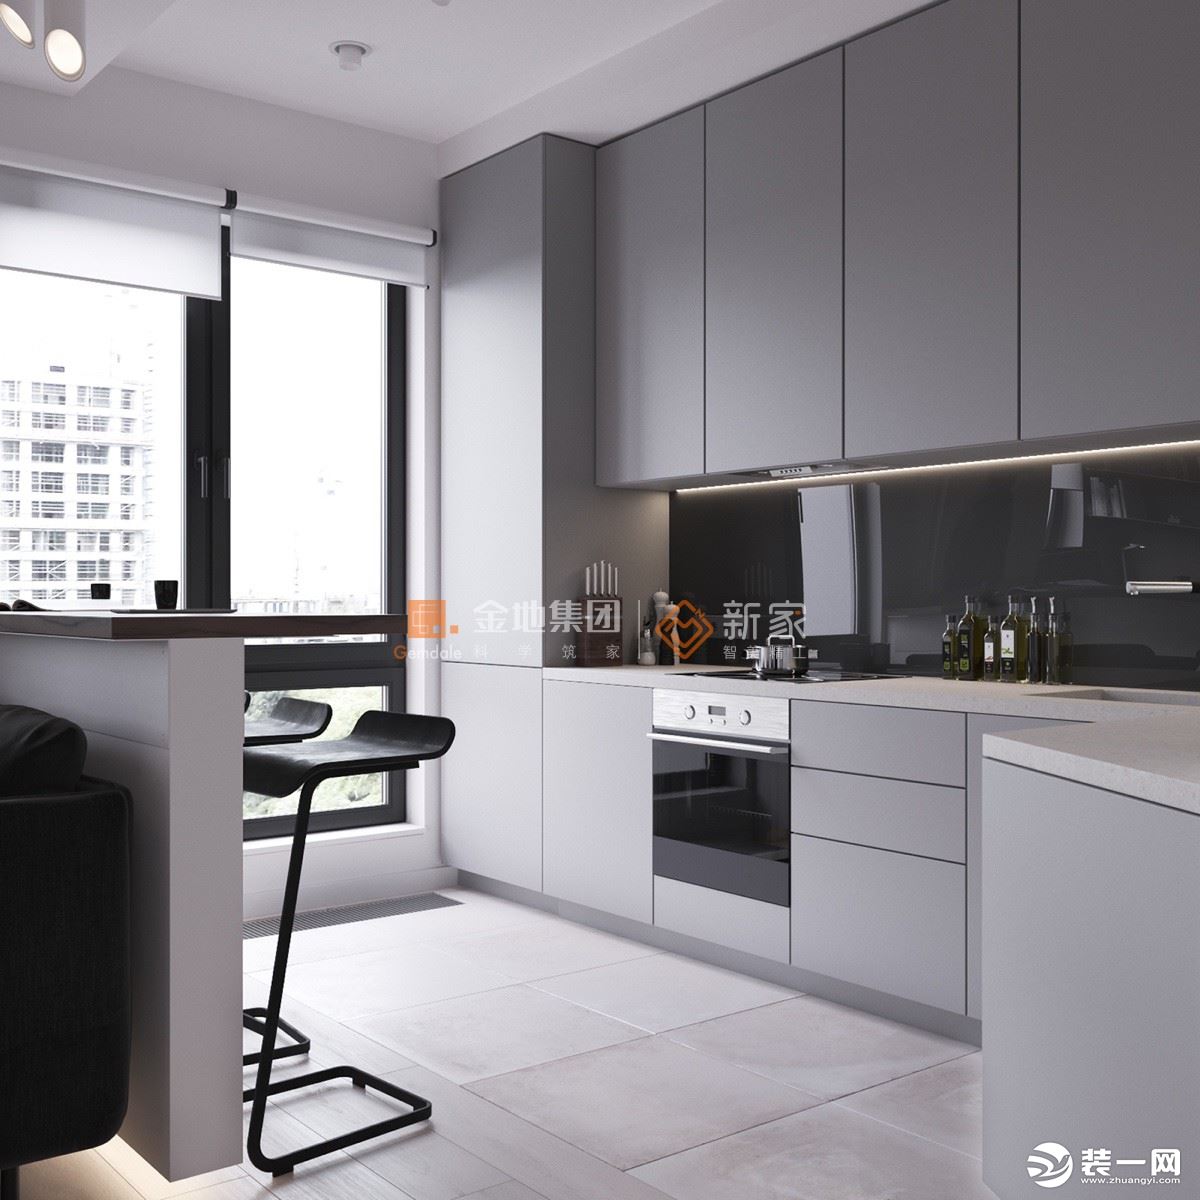 厨房：嵌入式浅色橱柜与墙面完美融合，在契合主人烹饪需求的同时，不失美感。